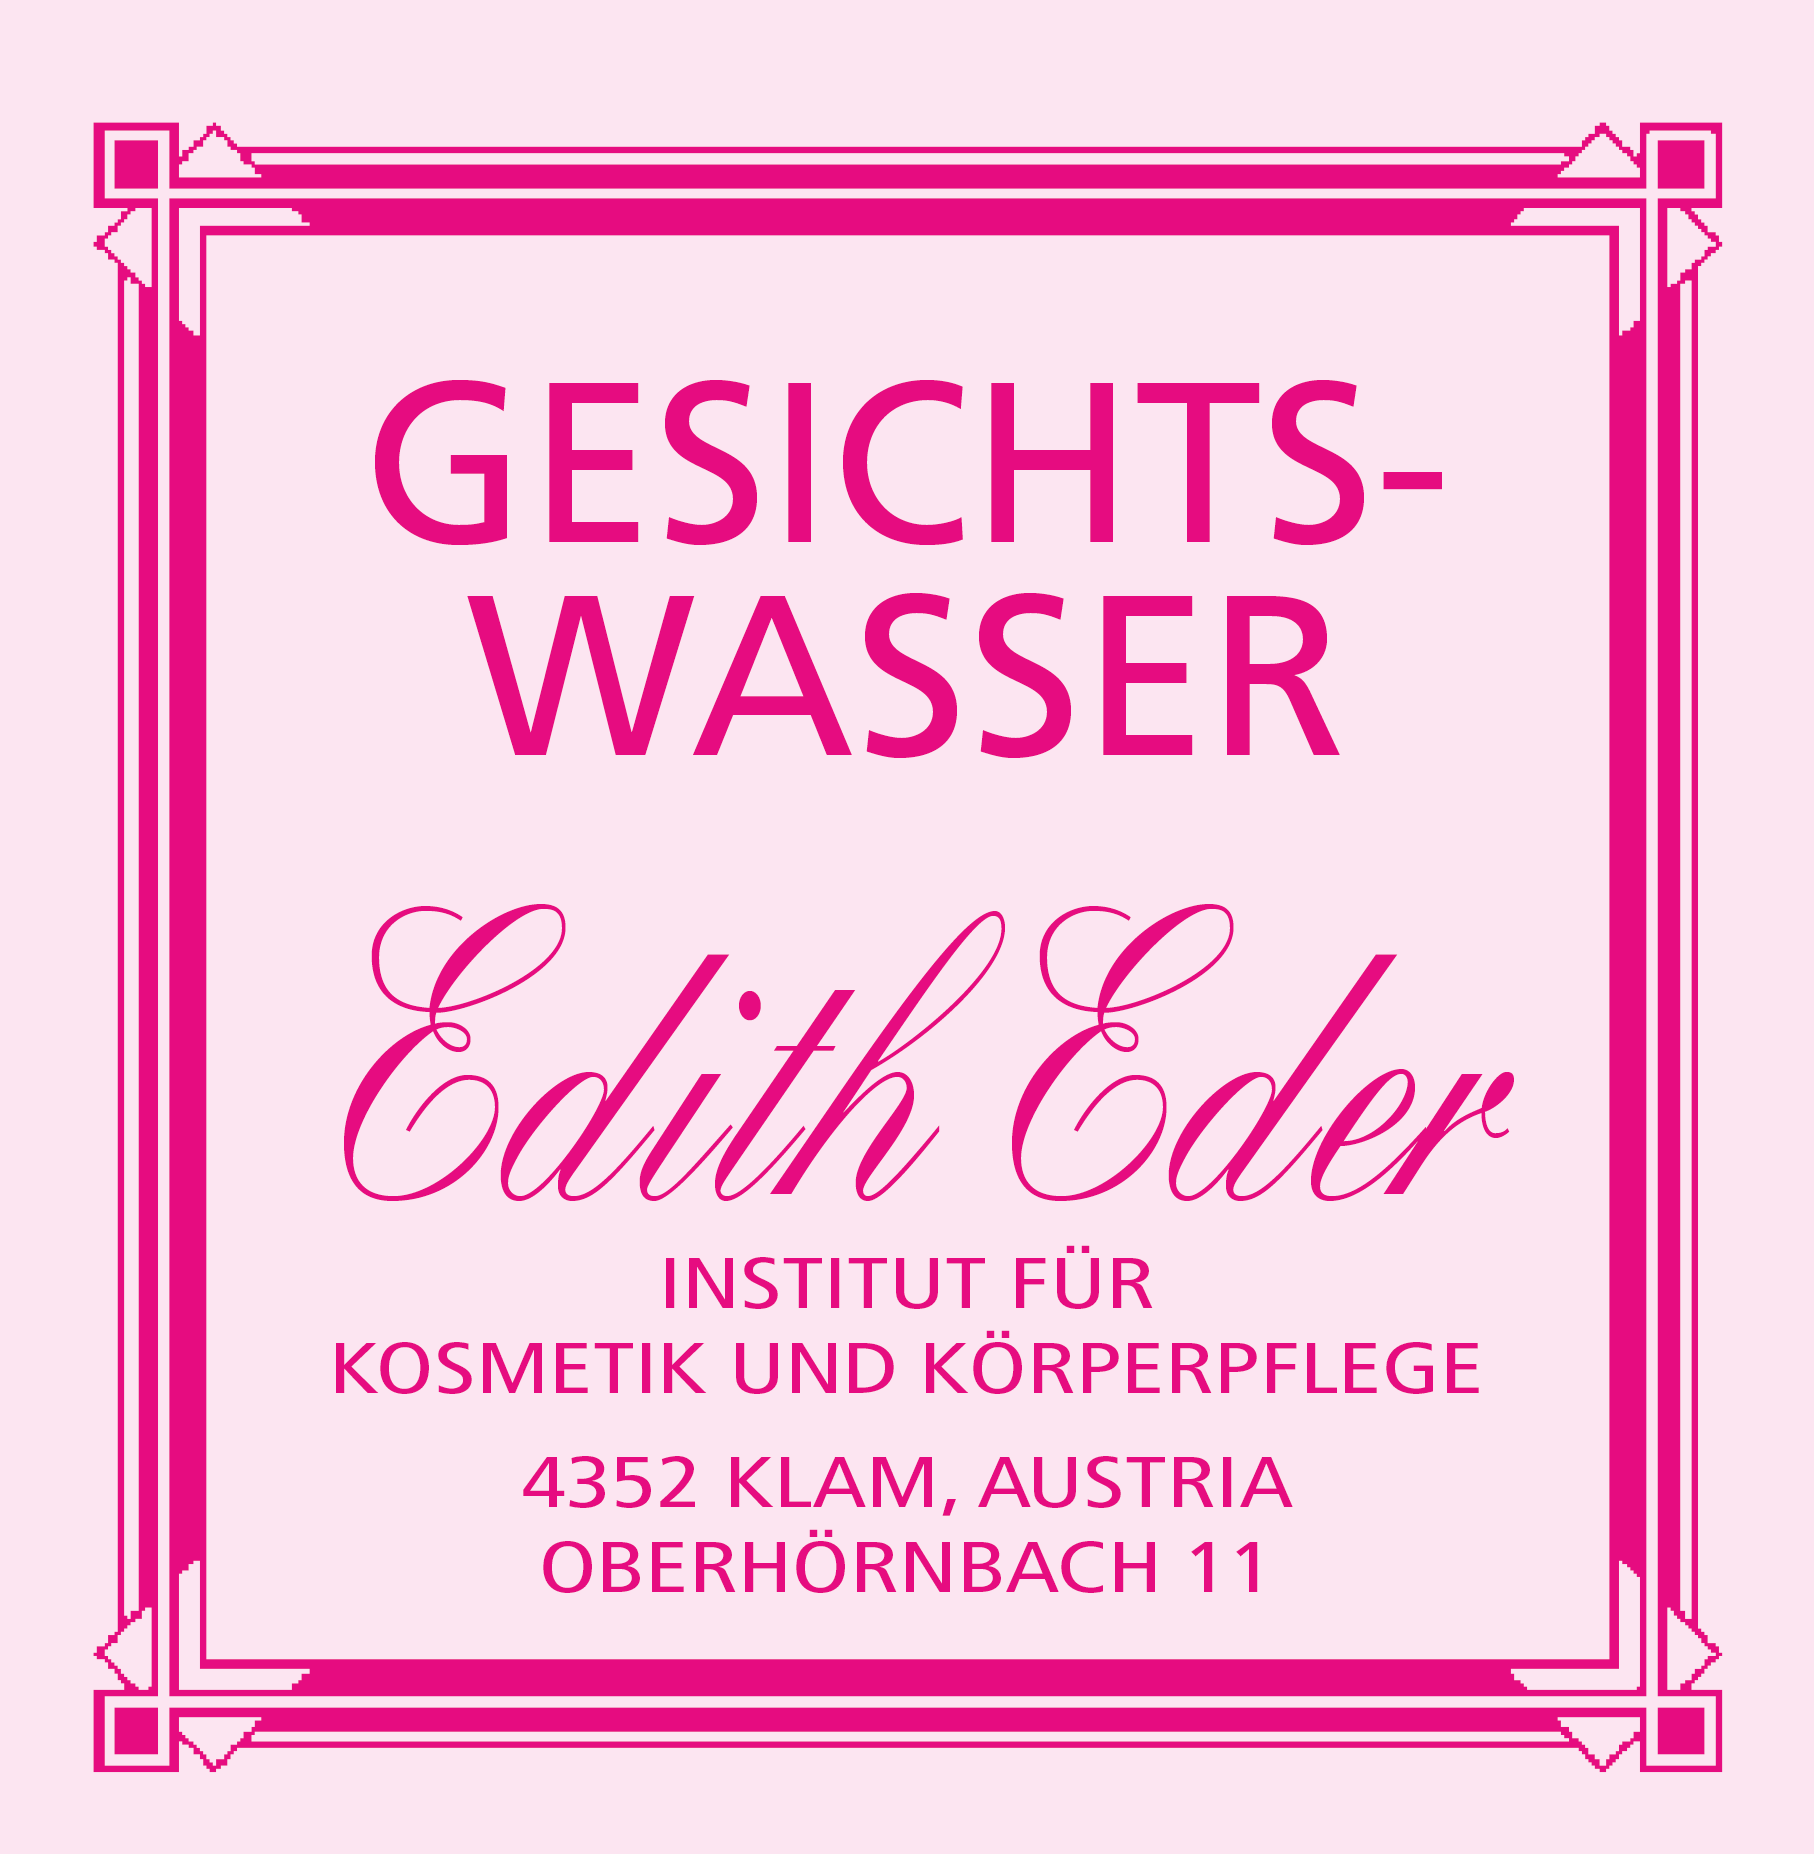 Gesichtswasser Edith Eder